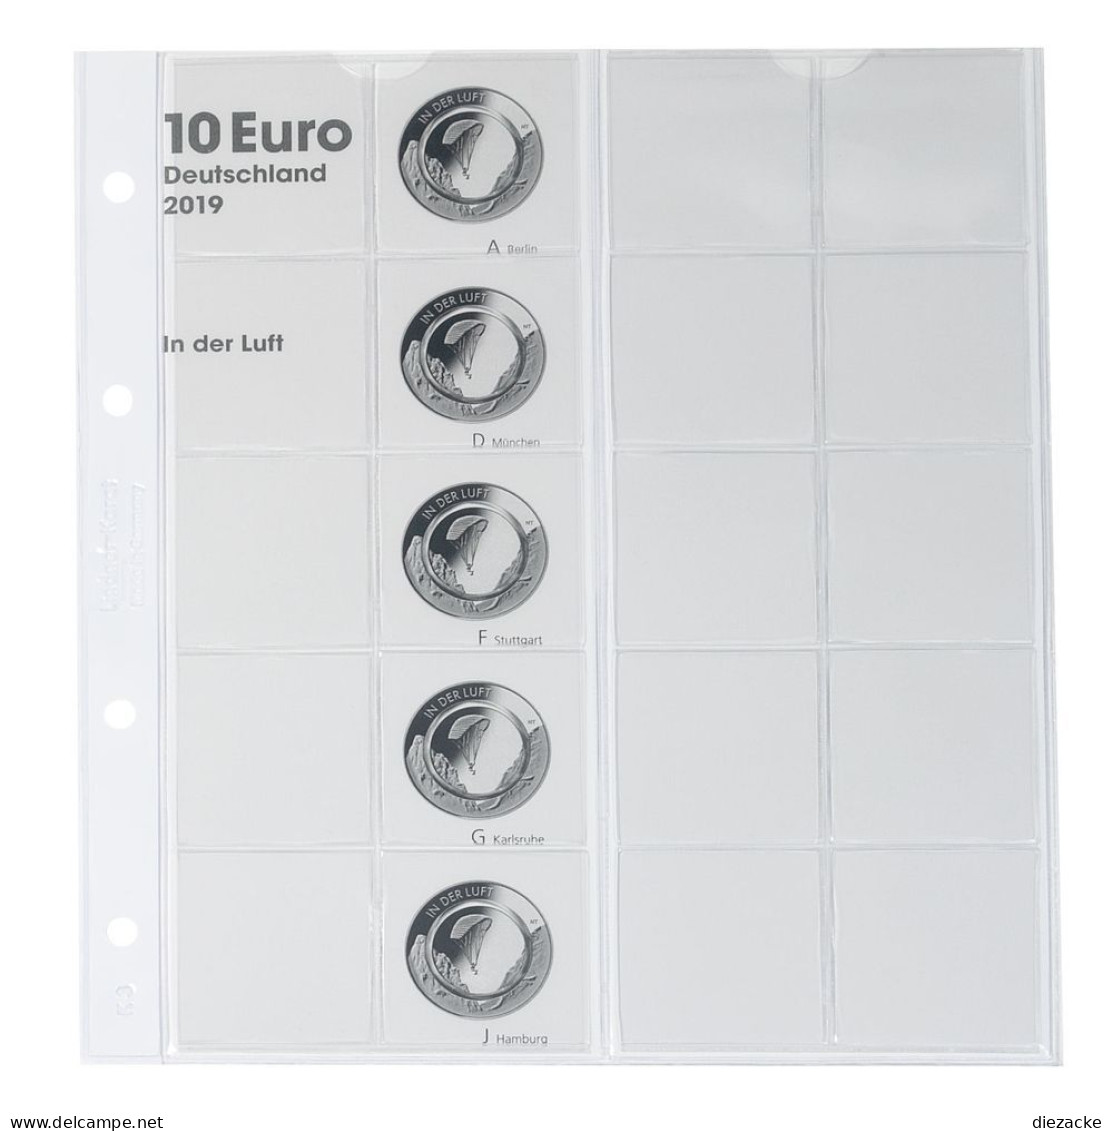 Lindner Vordruckblatt Karat Für 10 Euro-Münzen Polymerring 1110-1 Neu - Supplies And Equipment